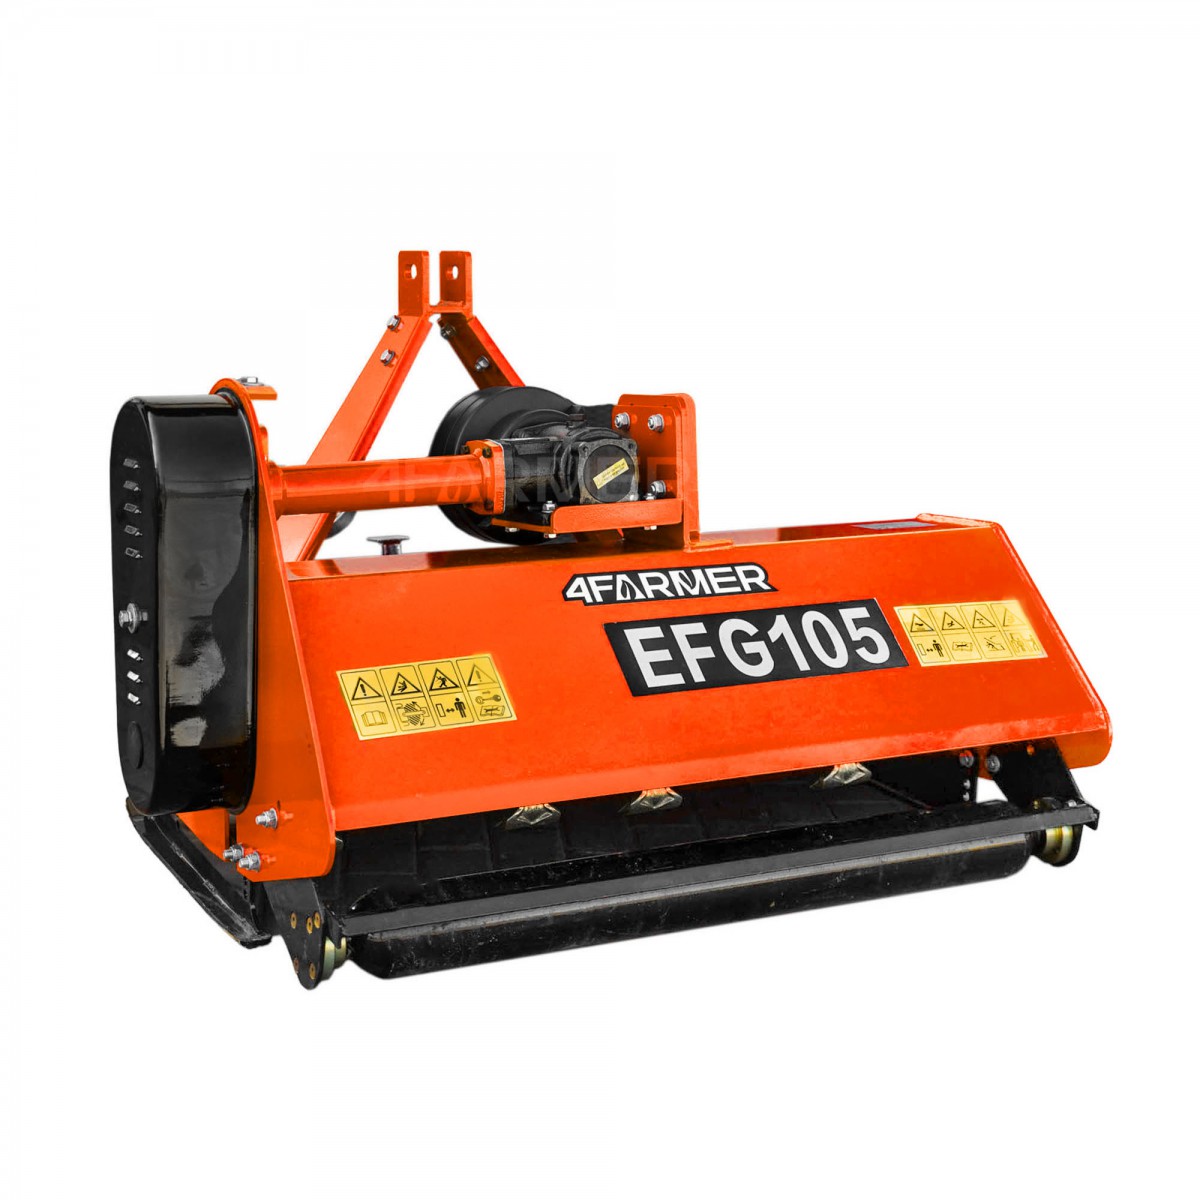 Trituradora de martillos EFG 105 4FARMER - naranja